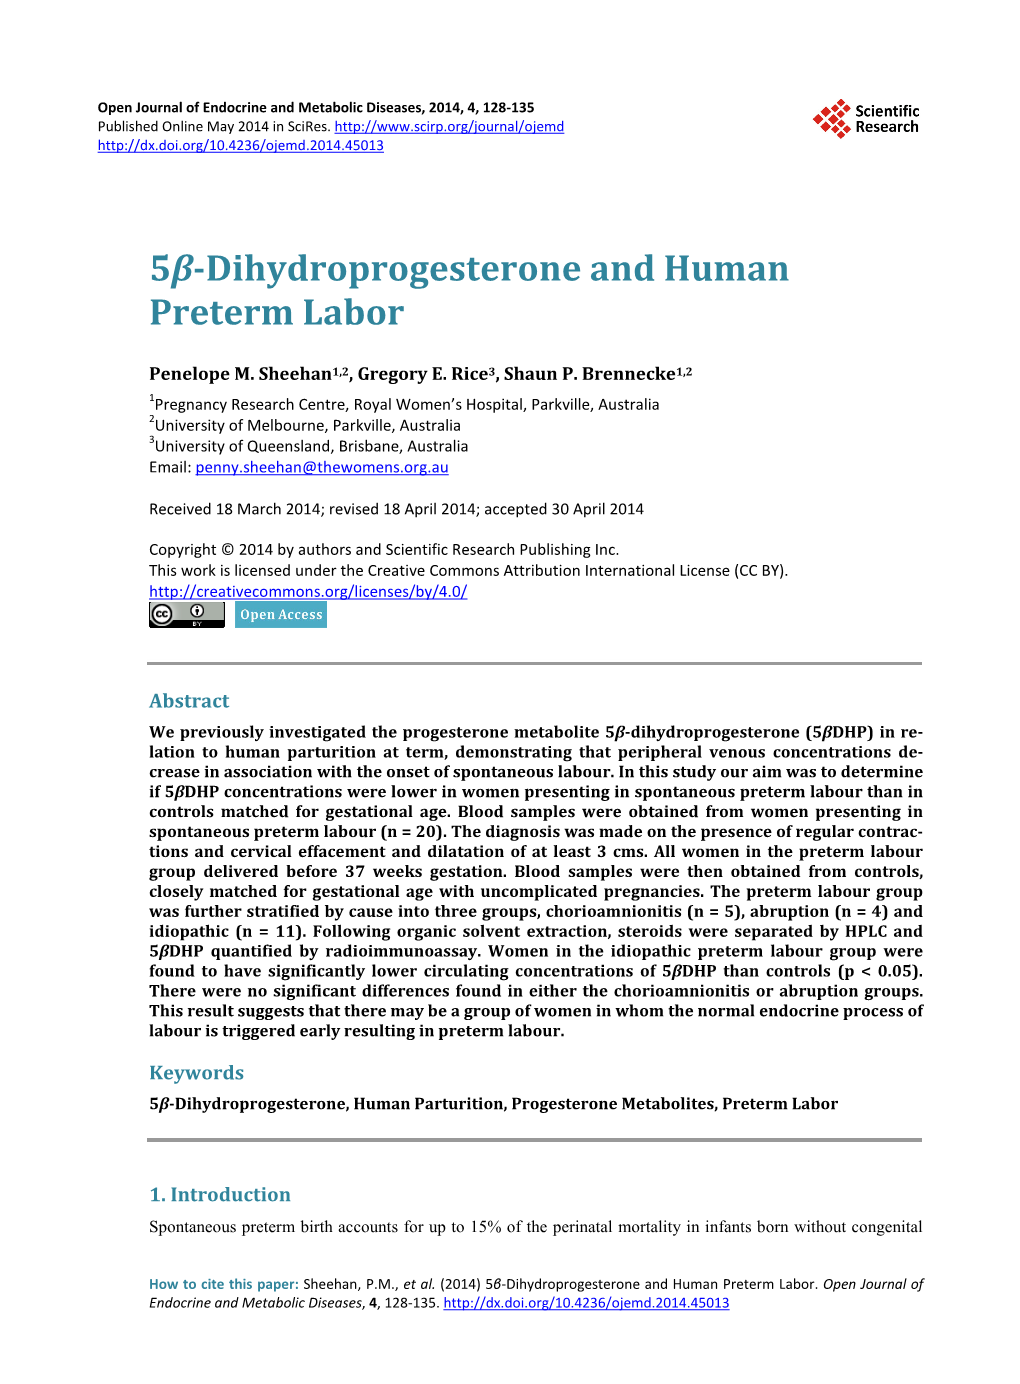 5Β-Dihydroprogesterone and Human Preterm Labor